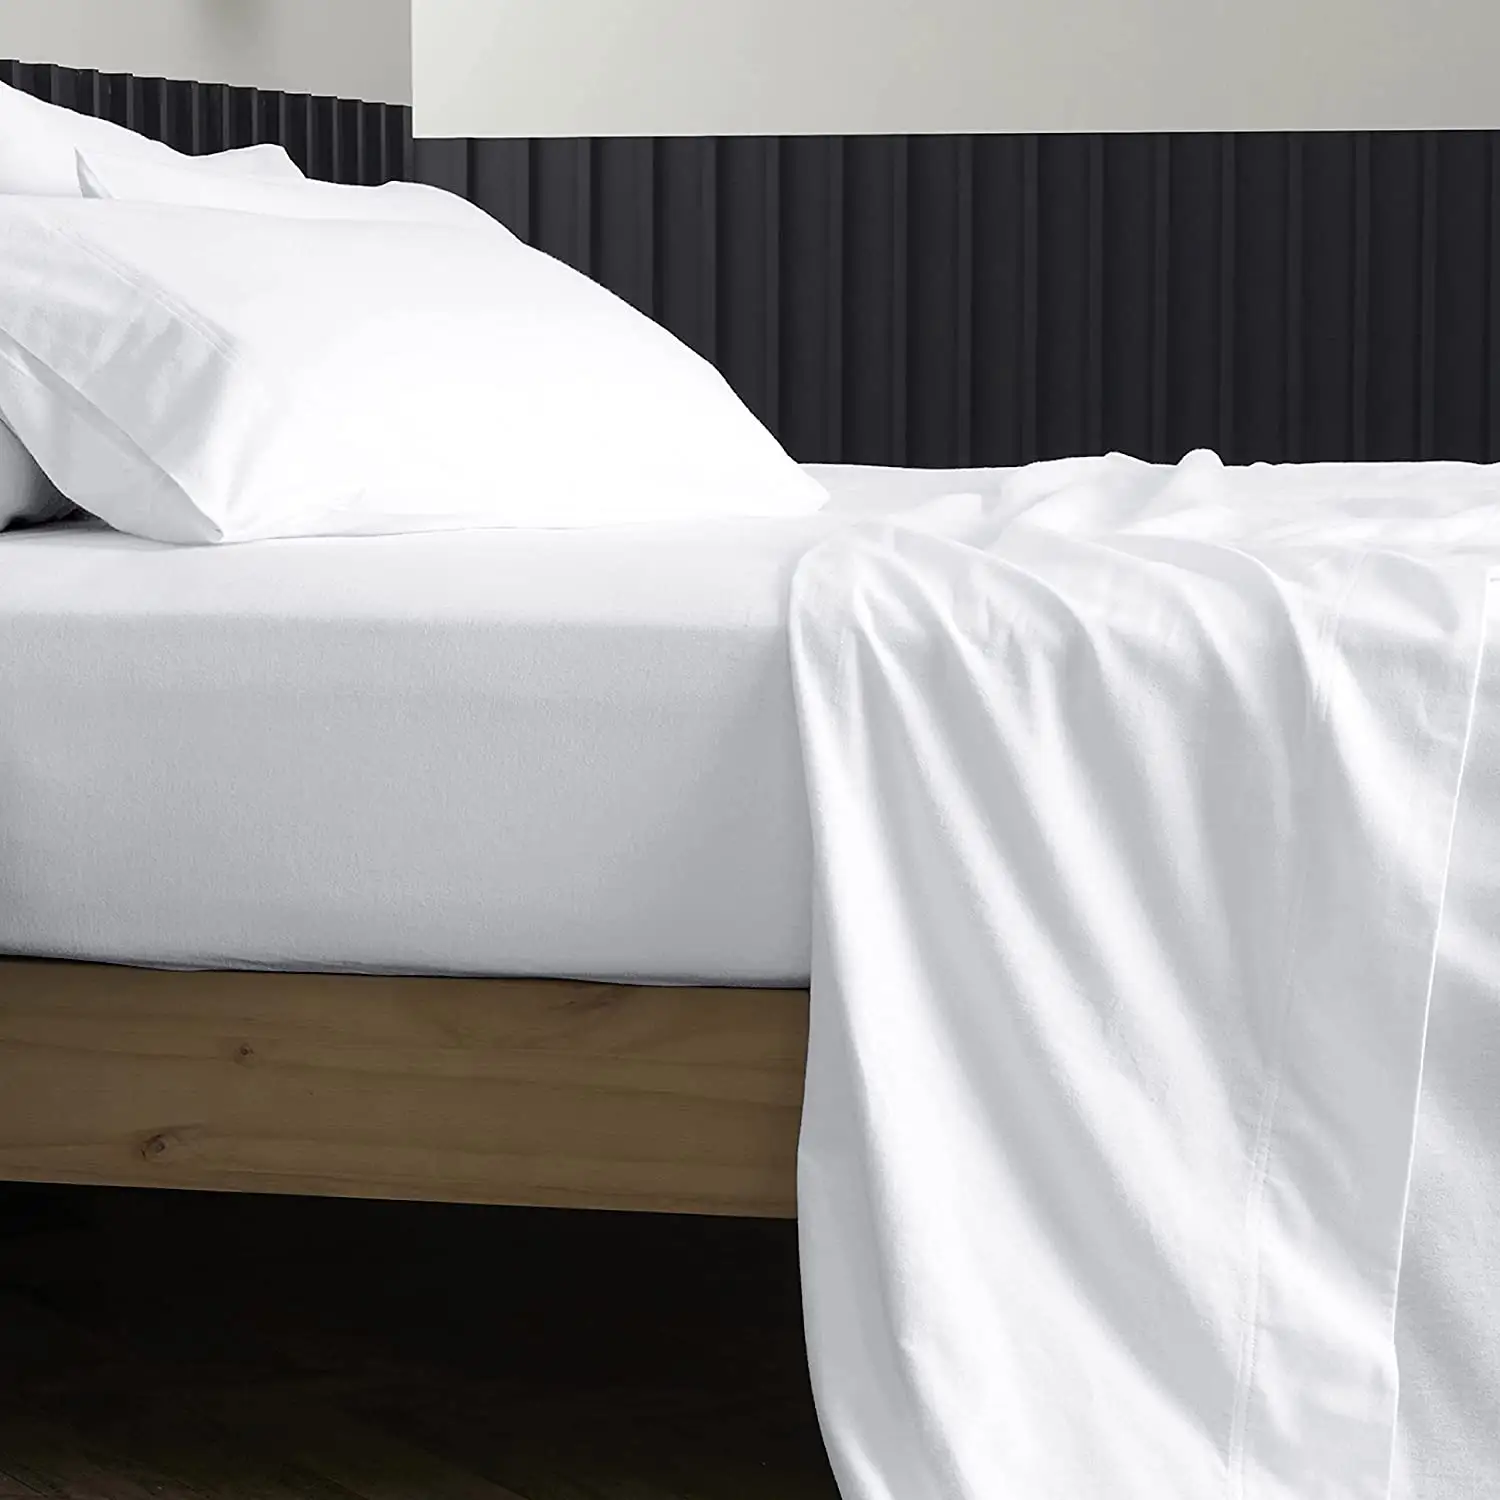 ผ้าปูเตียงสีขาวผ้าปูเตียงผ้าฝ้ายแท้สำหรับผ้าปูที่นอนผ้าปูเตียงโรงแรมโปรโมชั่น100% ขนาดคิงไซส์